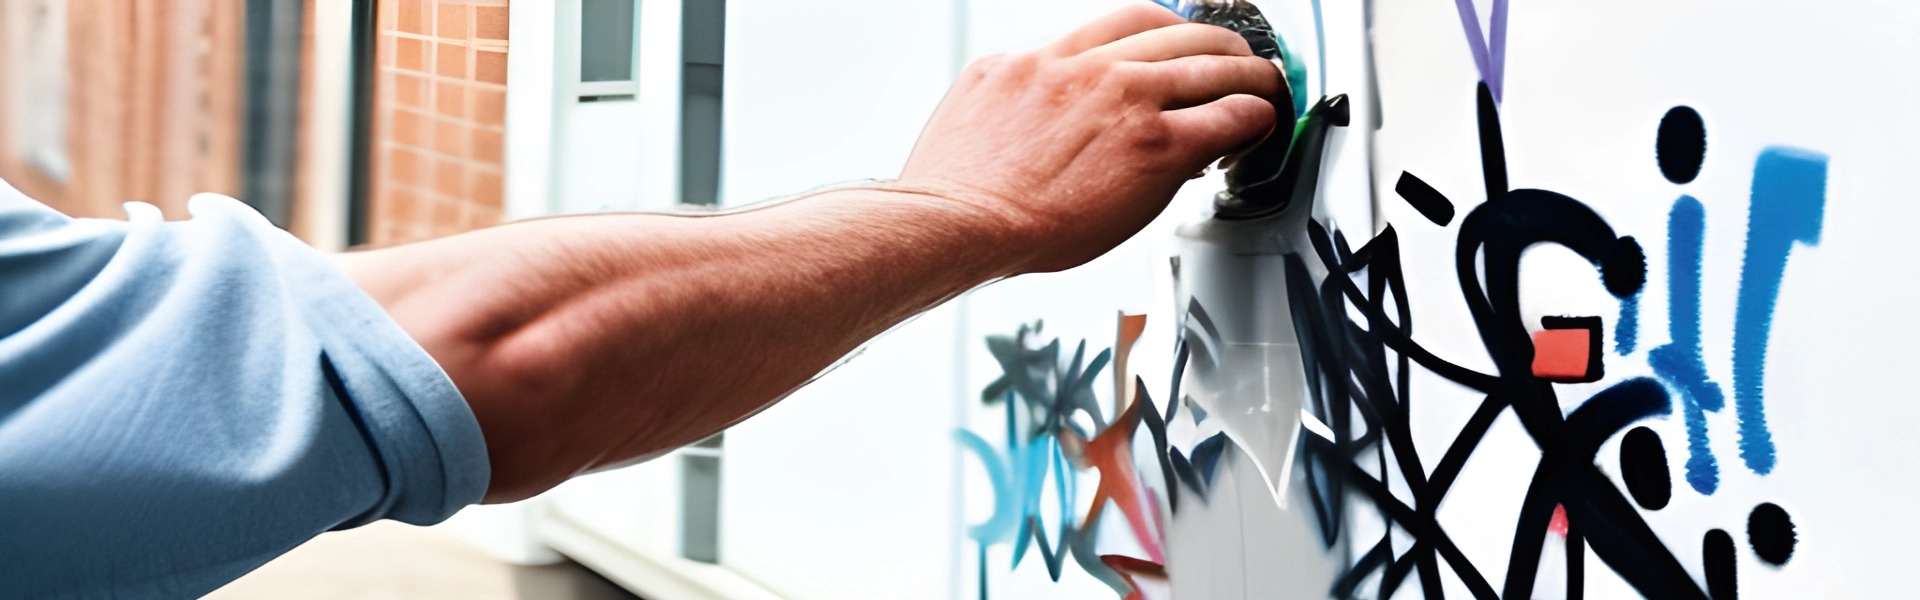 Ein Mann entfernt ein Graffitit von einer Wand